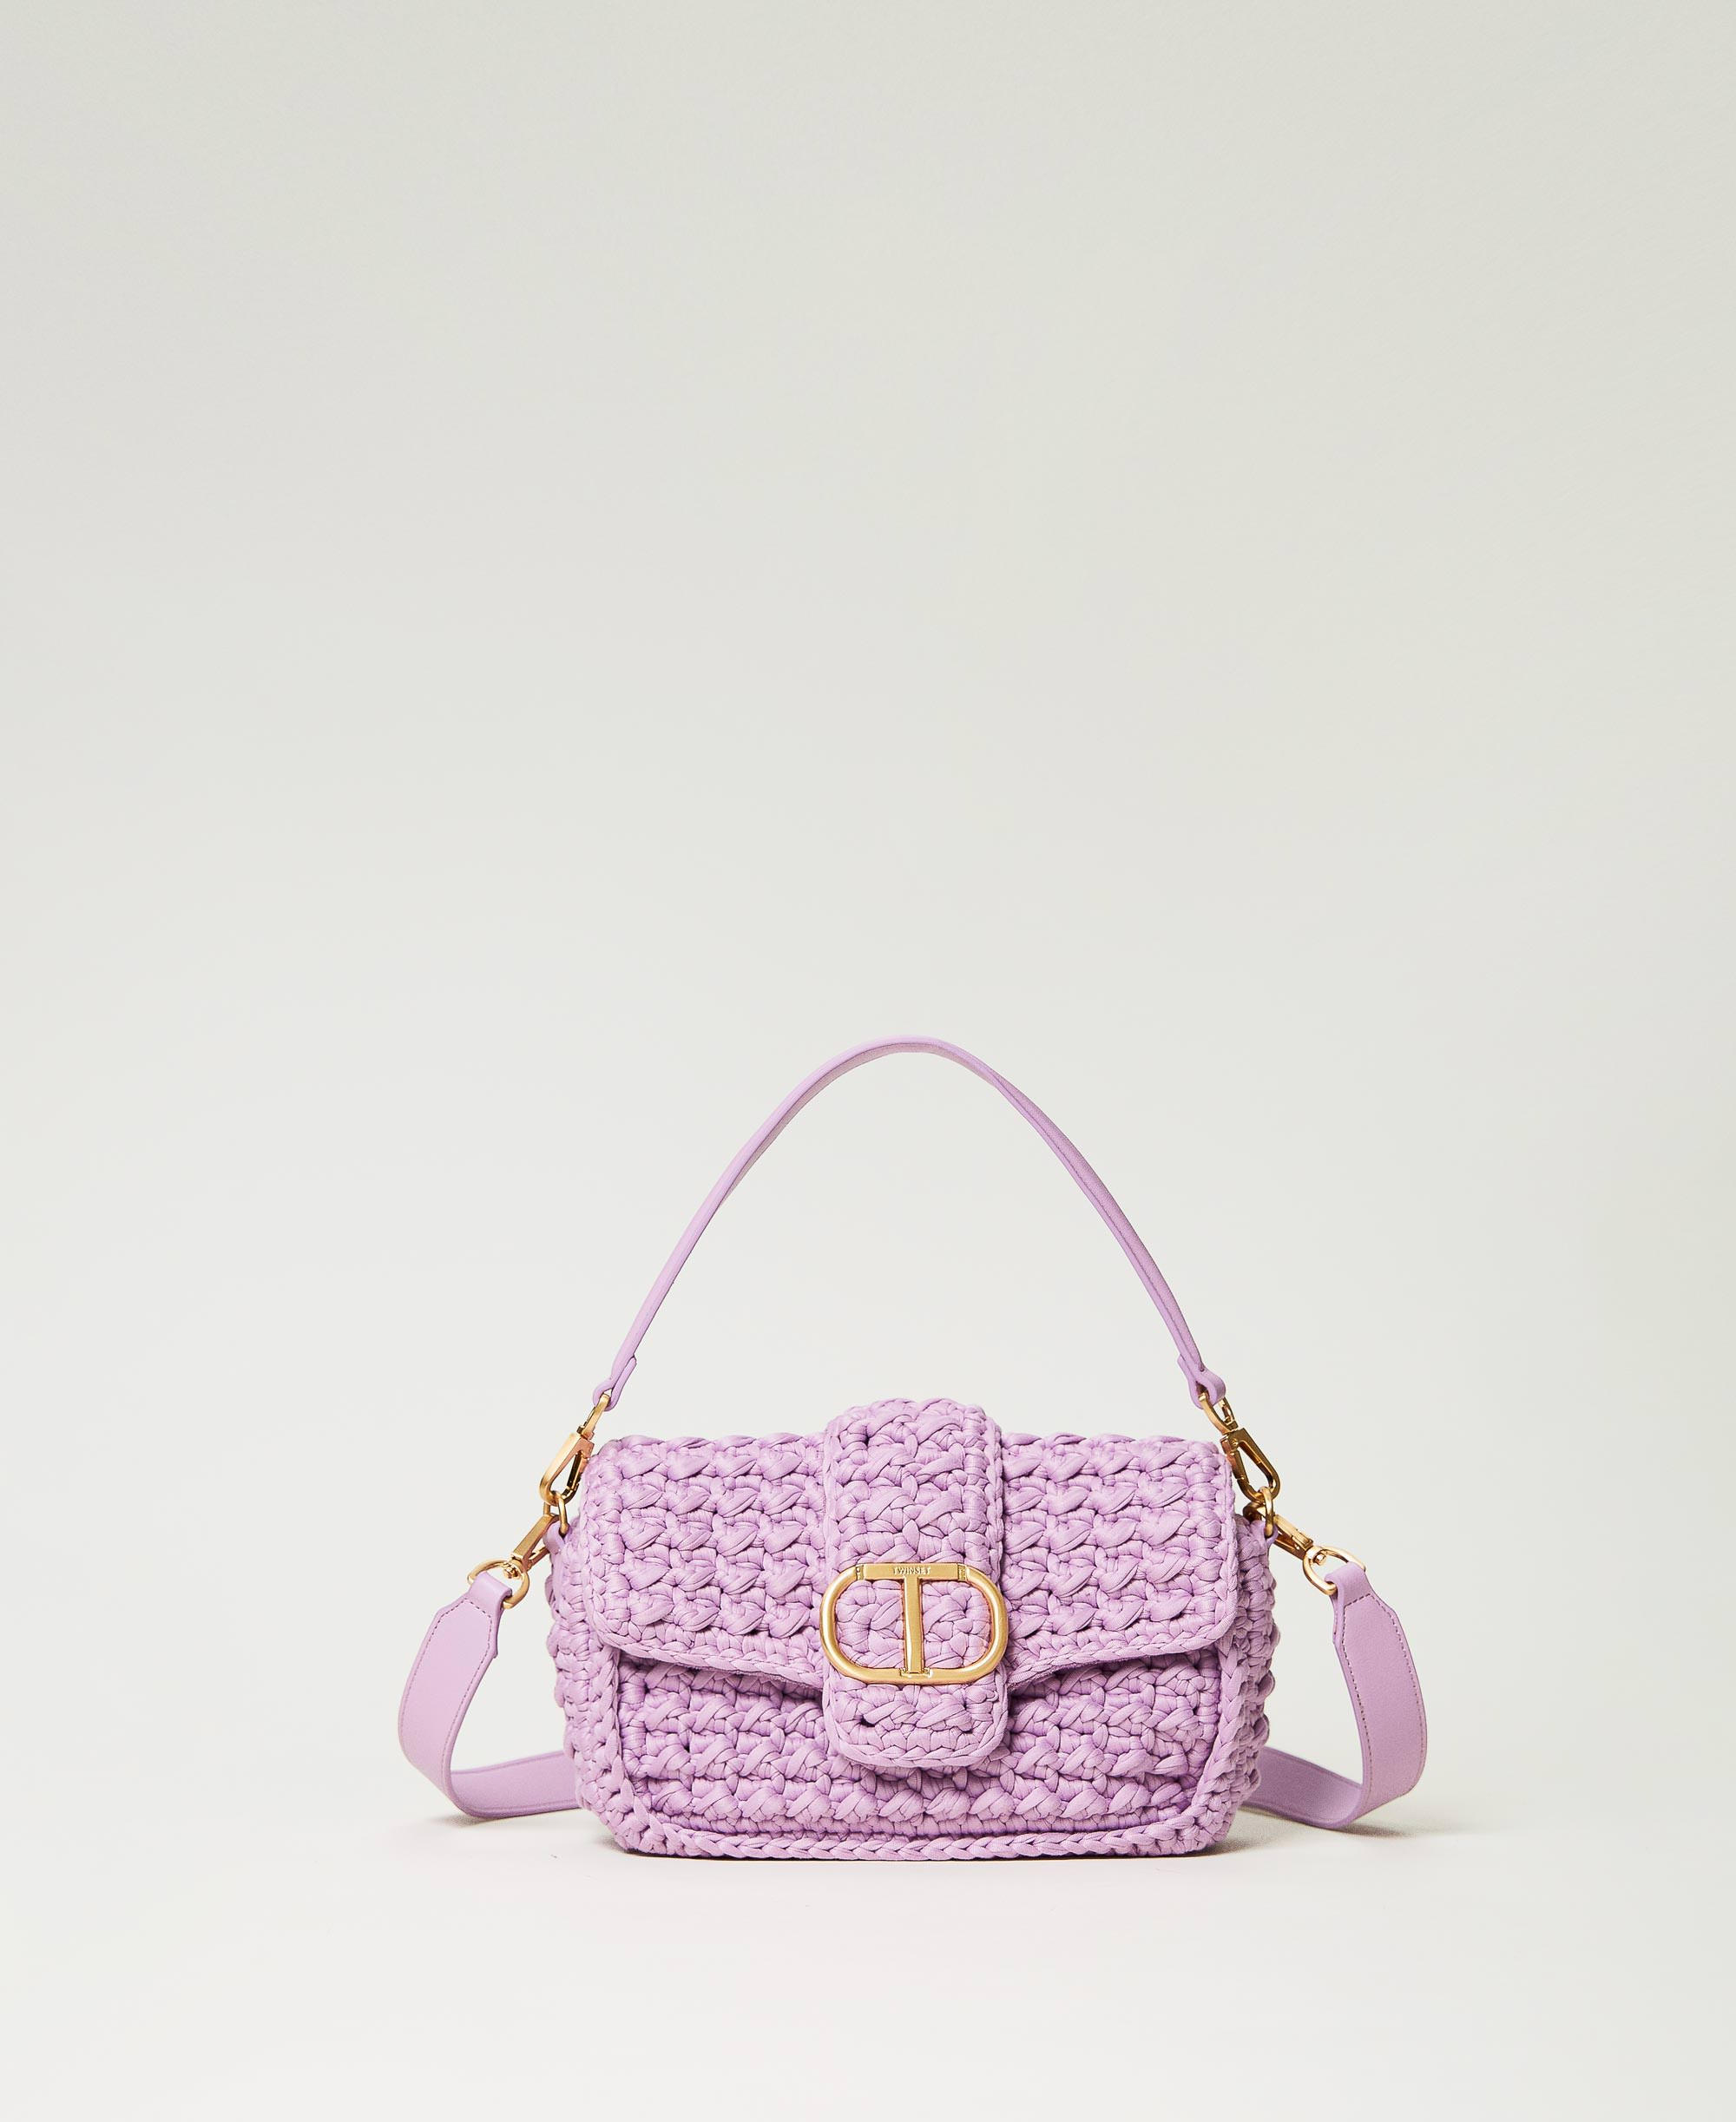 ‘Amie’ crochet shoulder bag